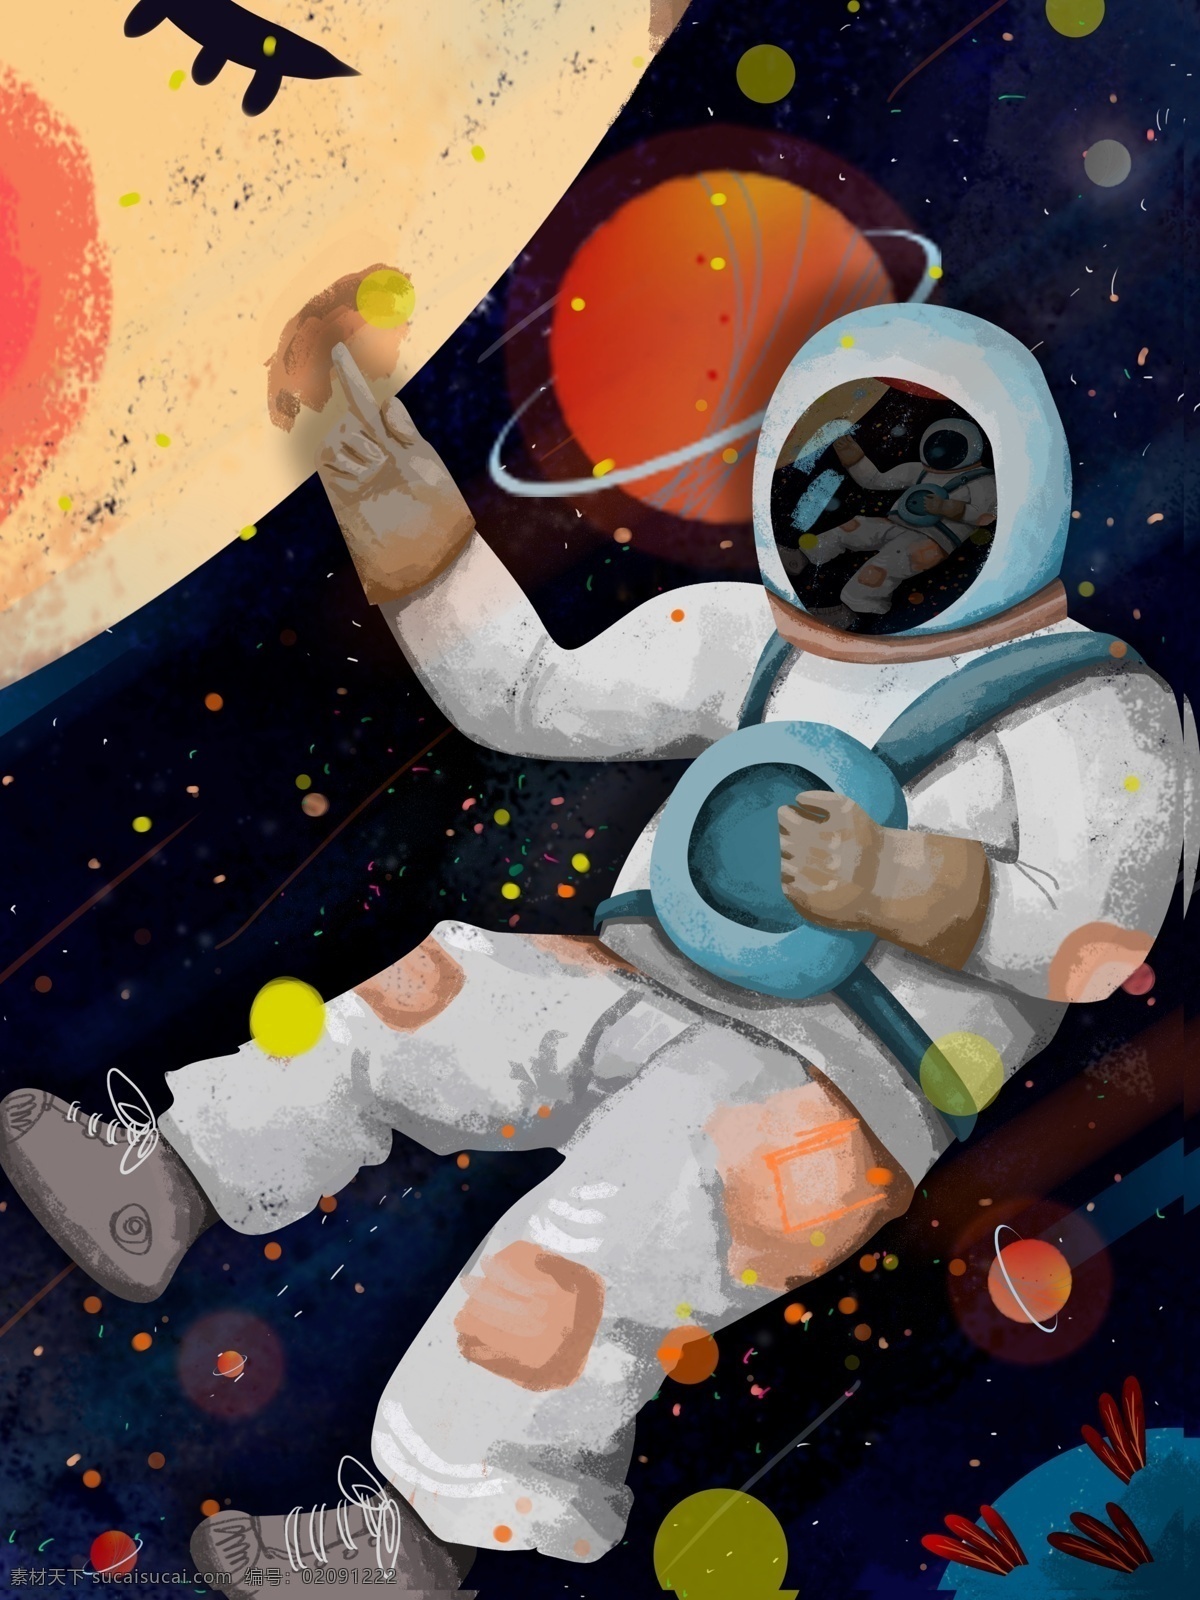 奇妙 太空 遨游 天外 有趣 星球 插画 绘画 壁纸 原创 元素 外太空 配图 微博配图 文章配图